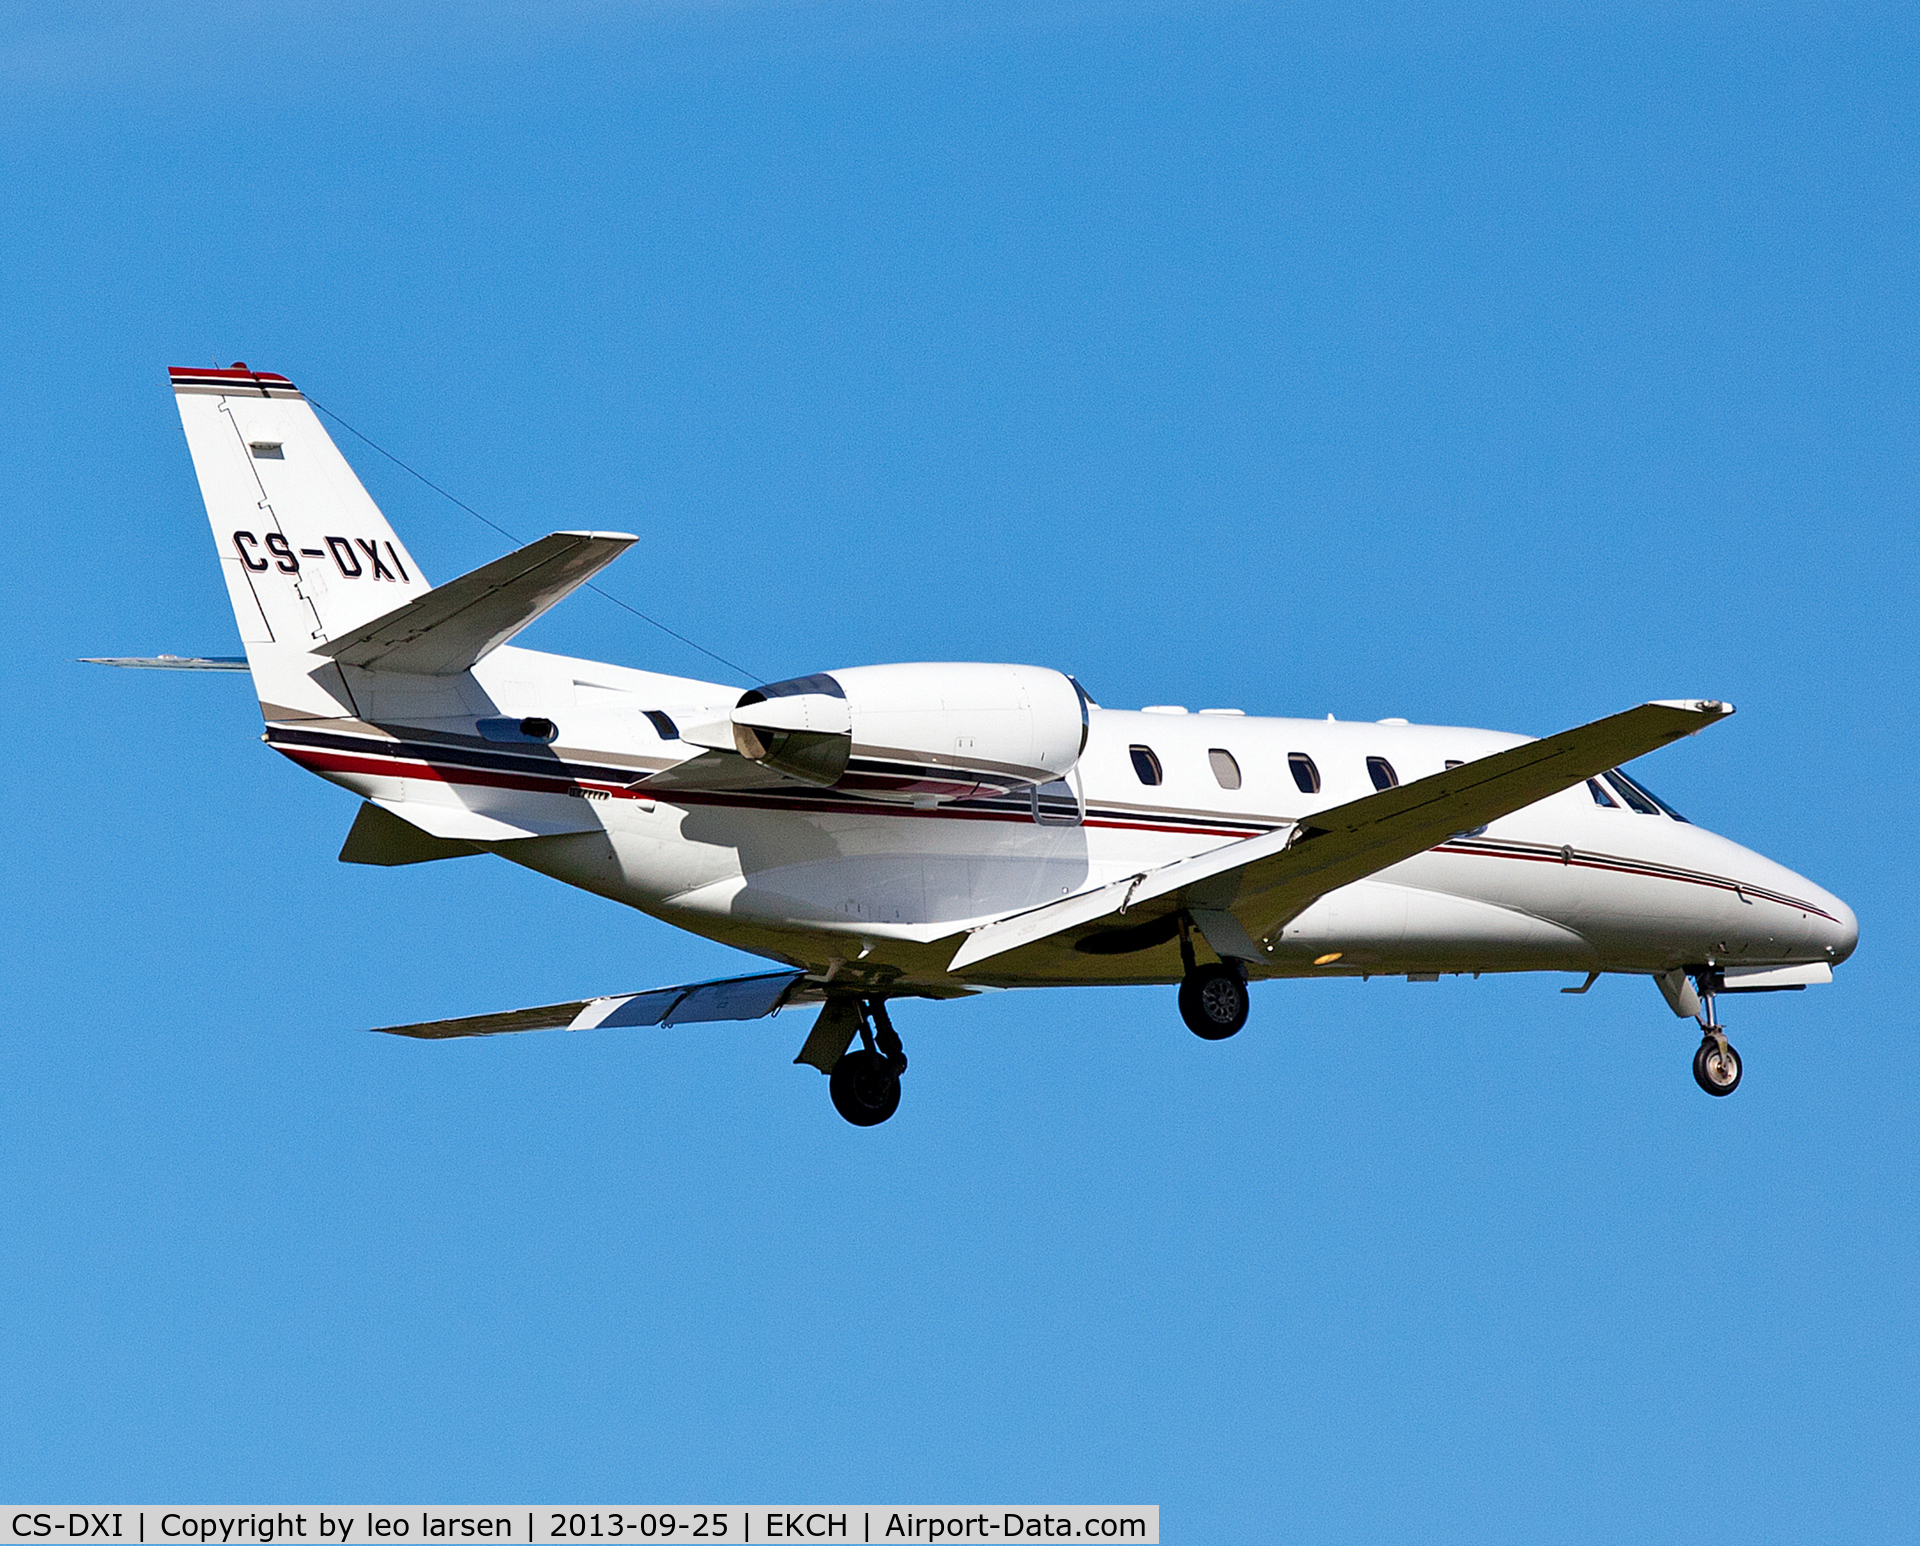 CS-DXI, 2006 Cessna 560 Citation XLS C/N 560-5621, Copenhagen 25.9.13